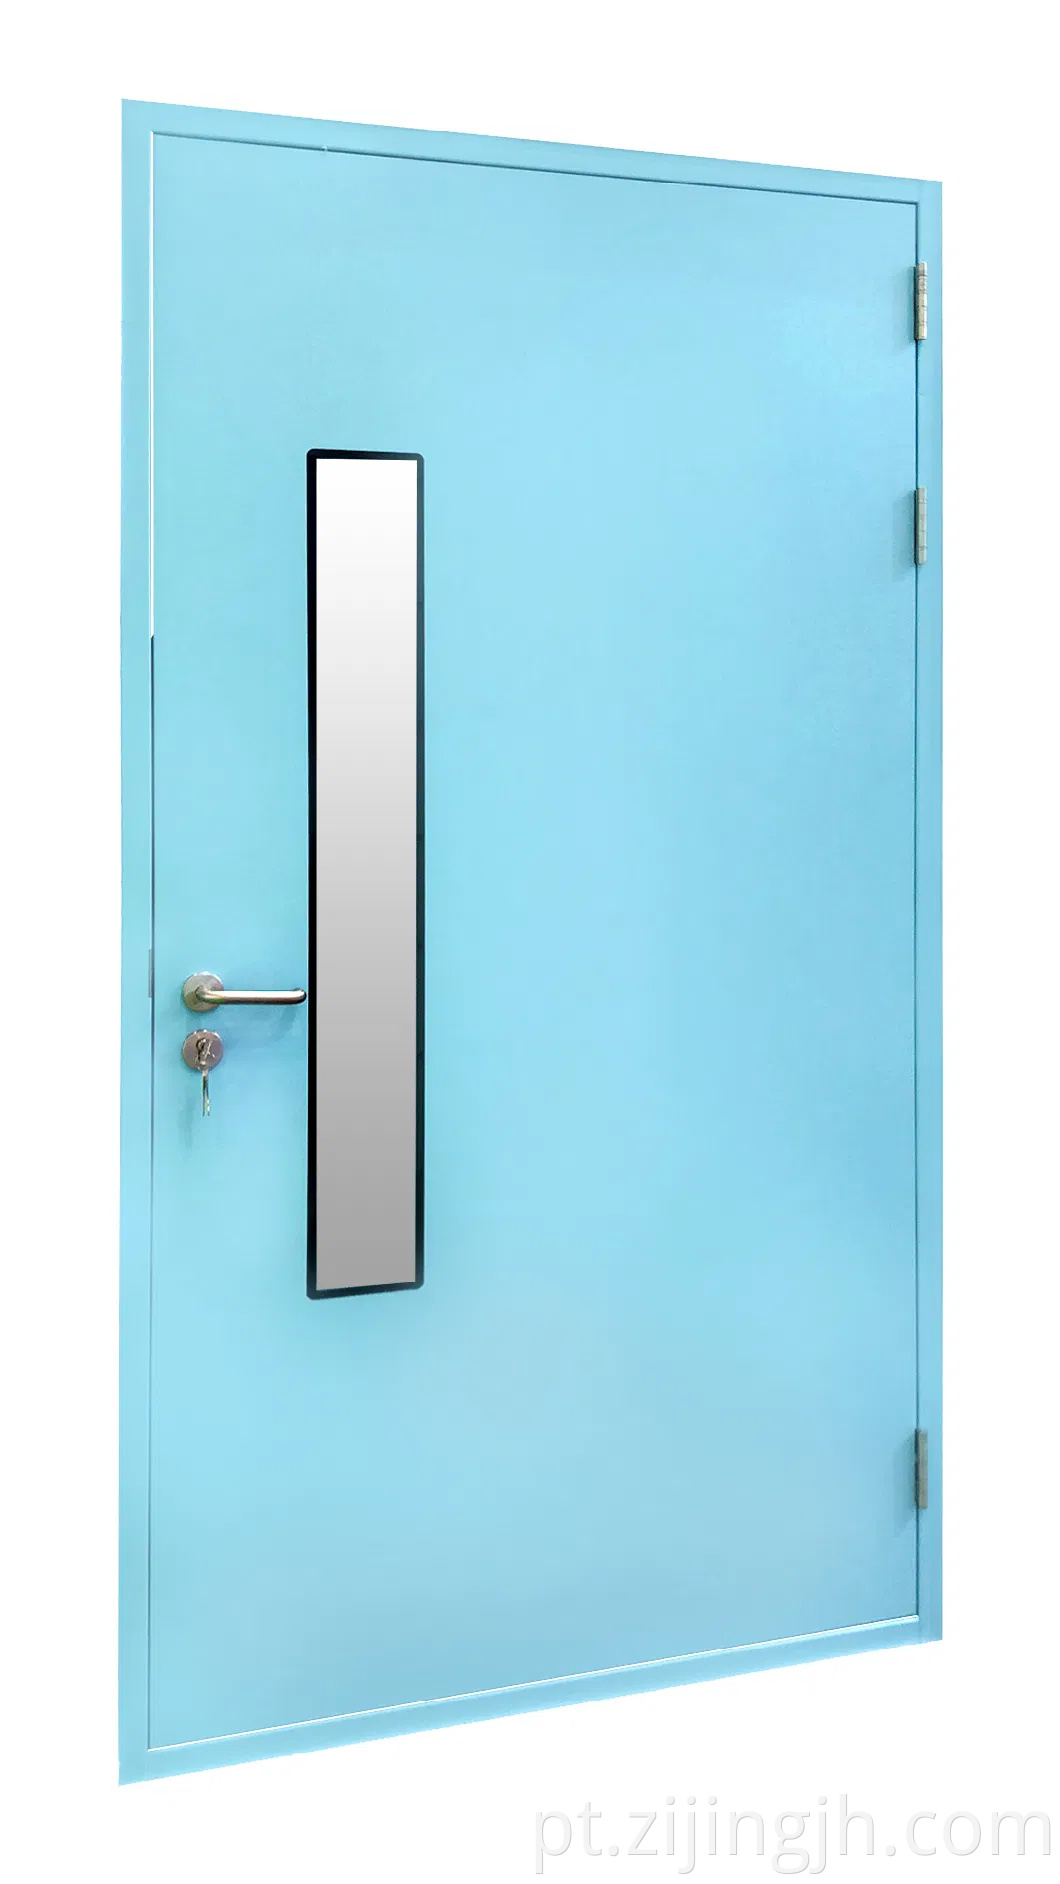 Entrada azul por atacado Limpa da porta hermética da porta de balanço para laboratório com preço de fábrica